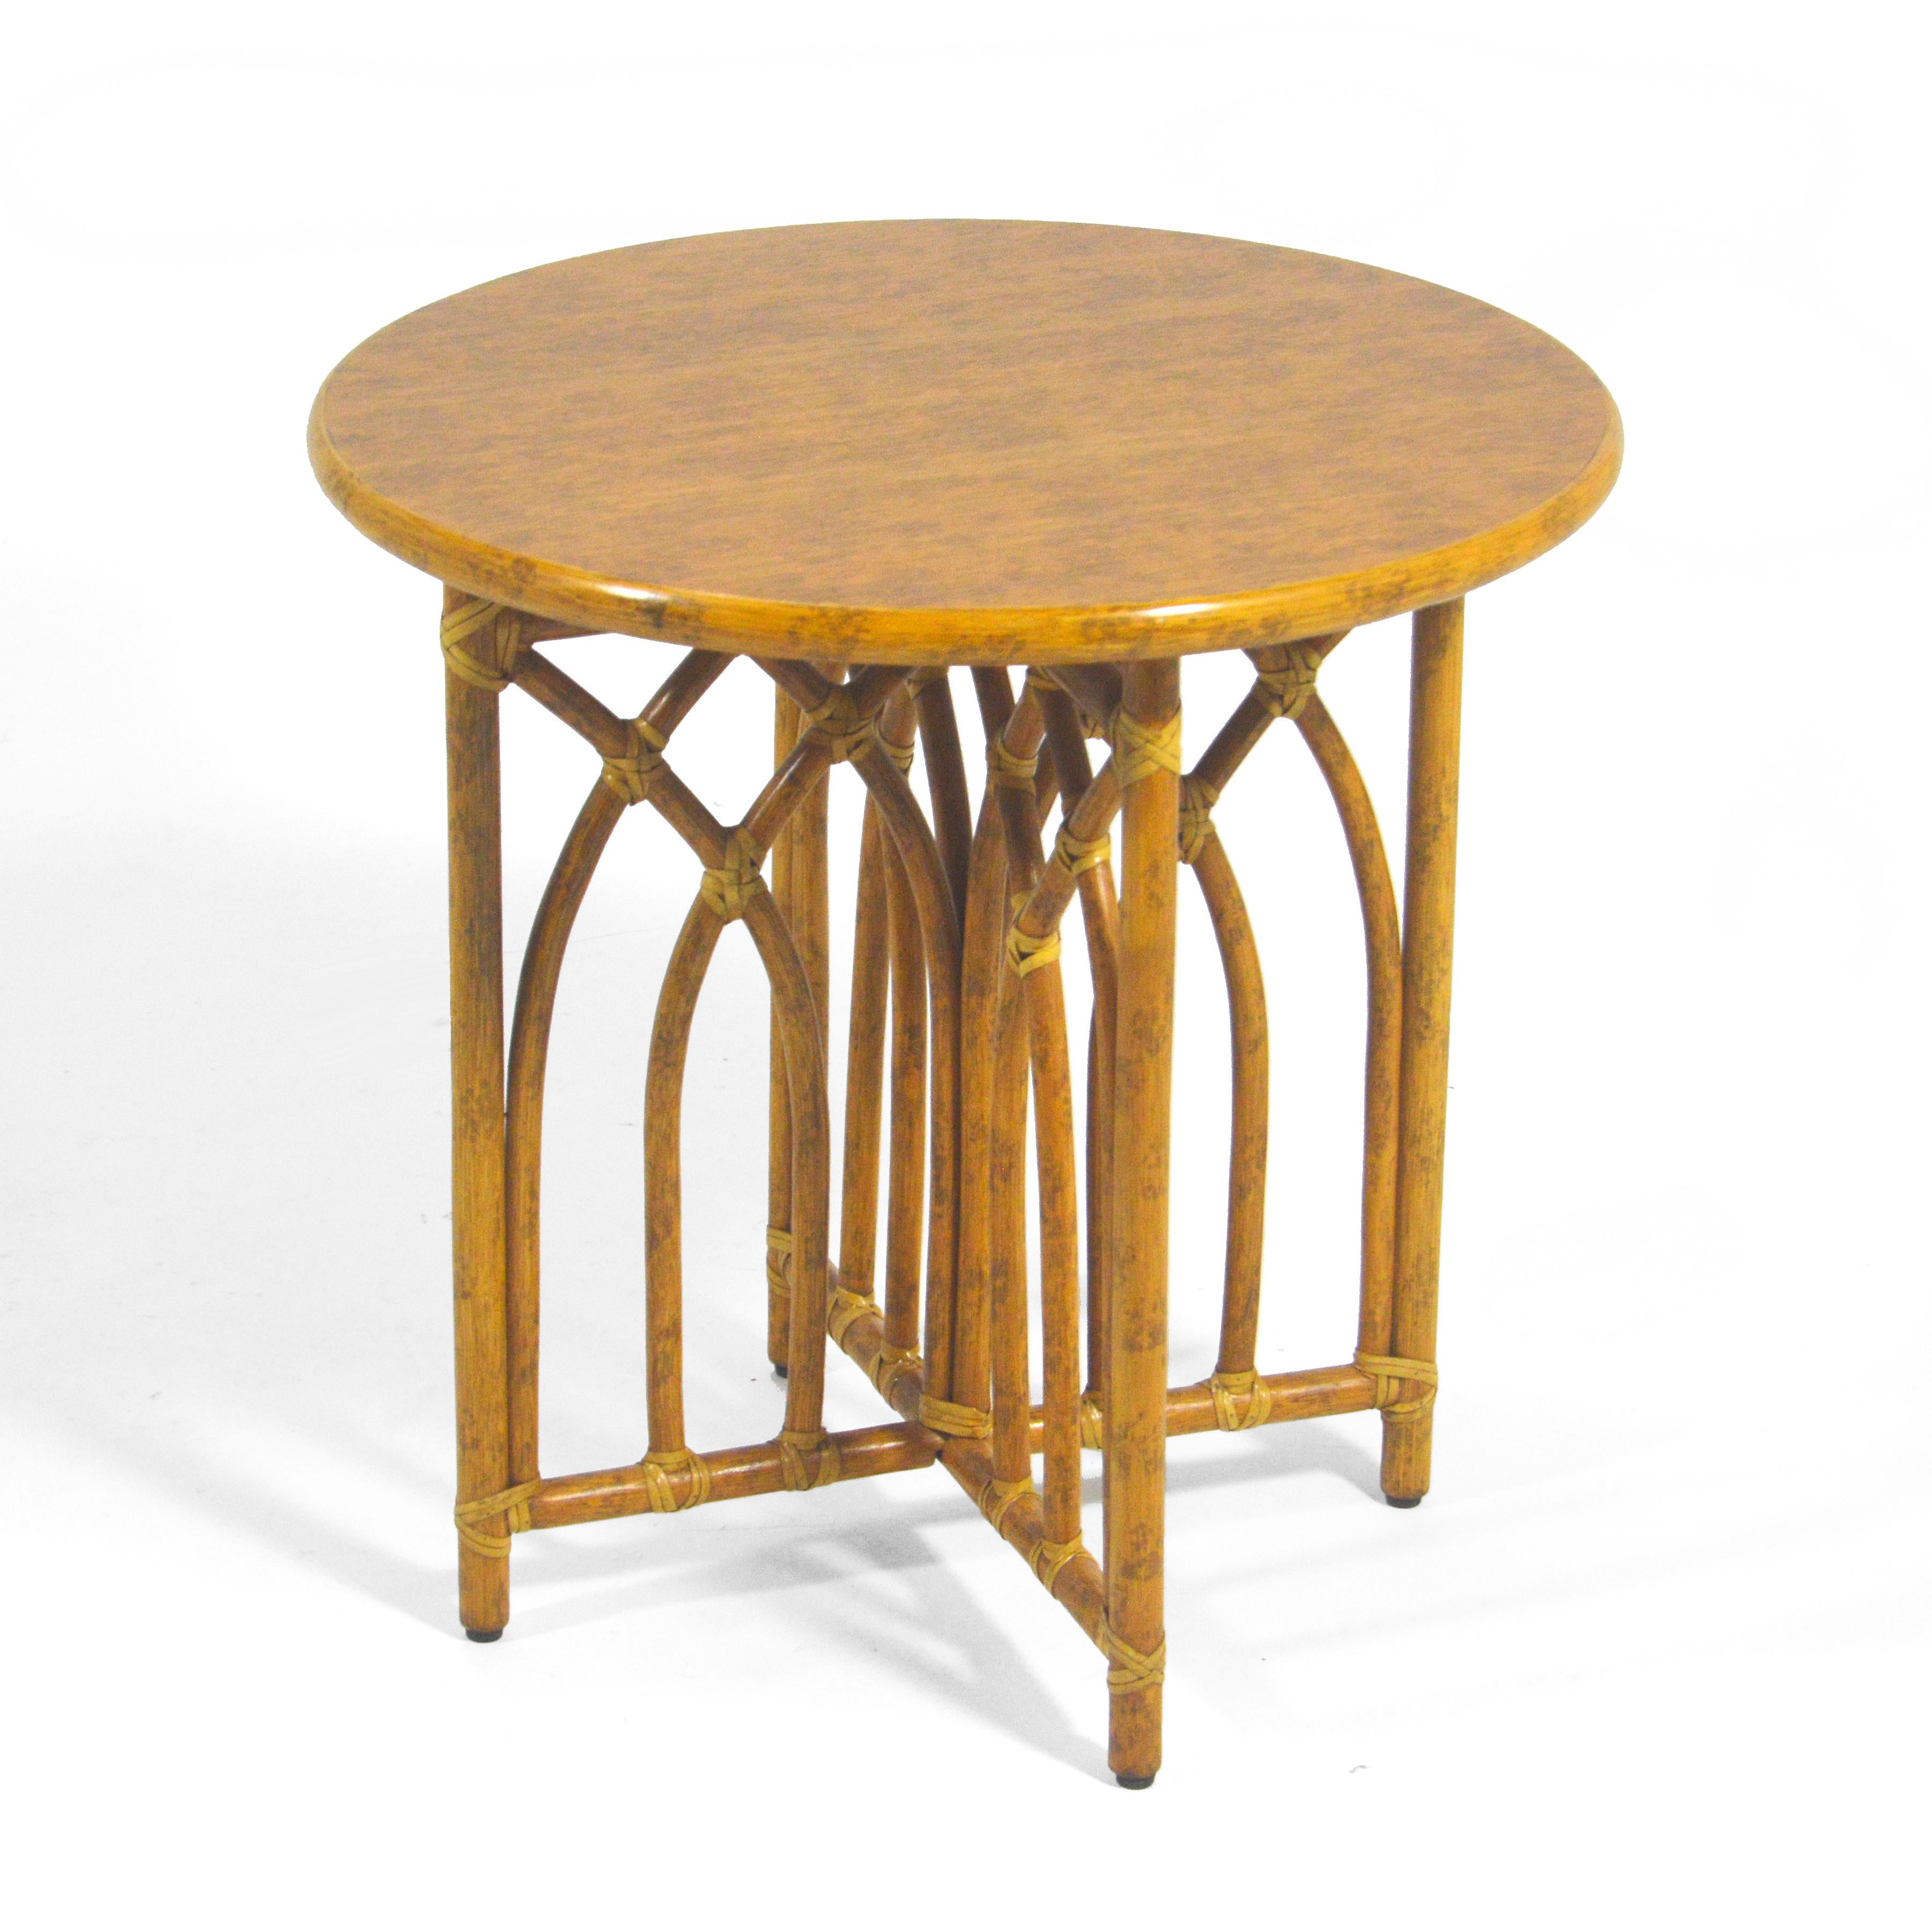 Une conception exceptionnelle par Elinor & John McQuire pour leur entreprise éponyme, cette table d'appoint en rotin a une beauté et une grâce subtiles ainsi qu'une qualité de construction impeccable. La base organique moderne en rotin a quatre